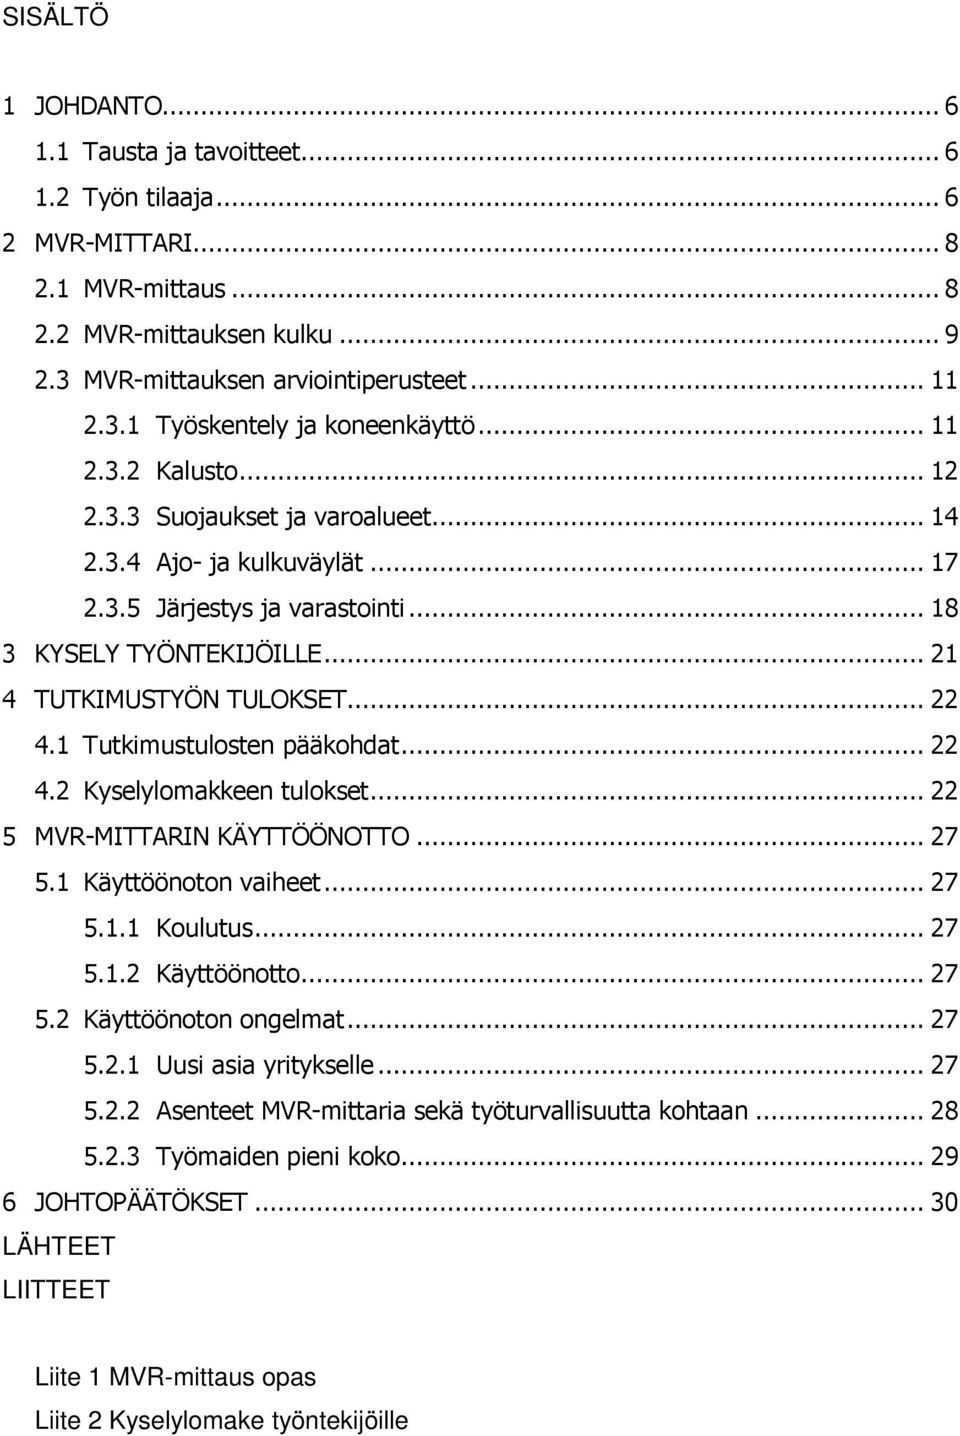 MVR-mittarin käyttöönotto Koneurakointi M. Niiranen Oy:ssä - PDF Free  Download